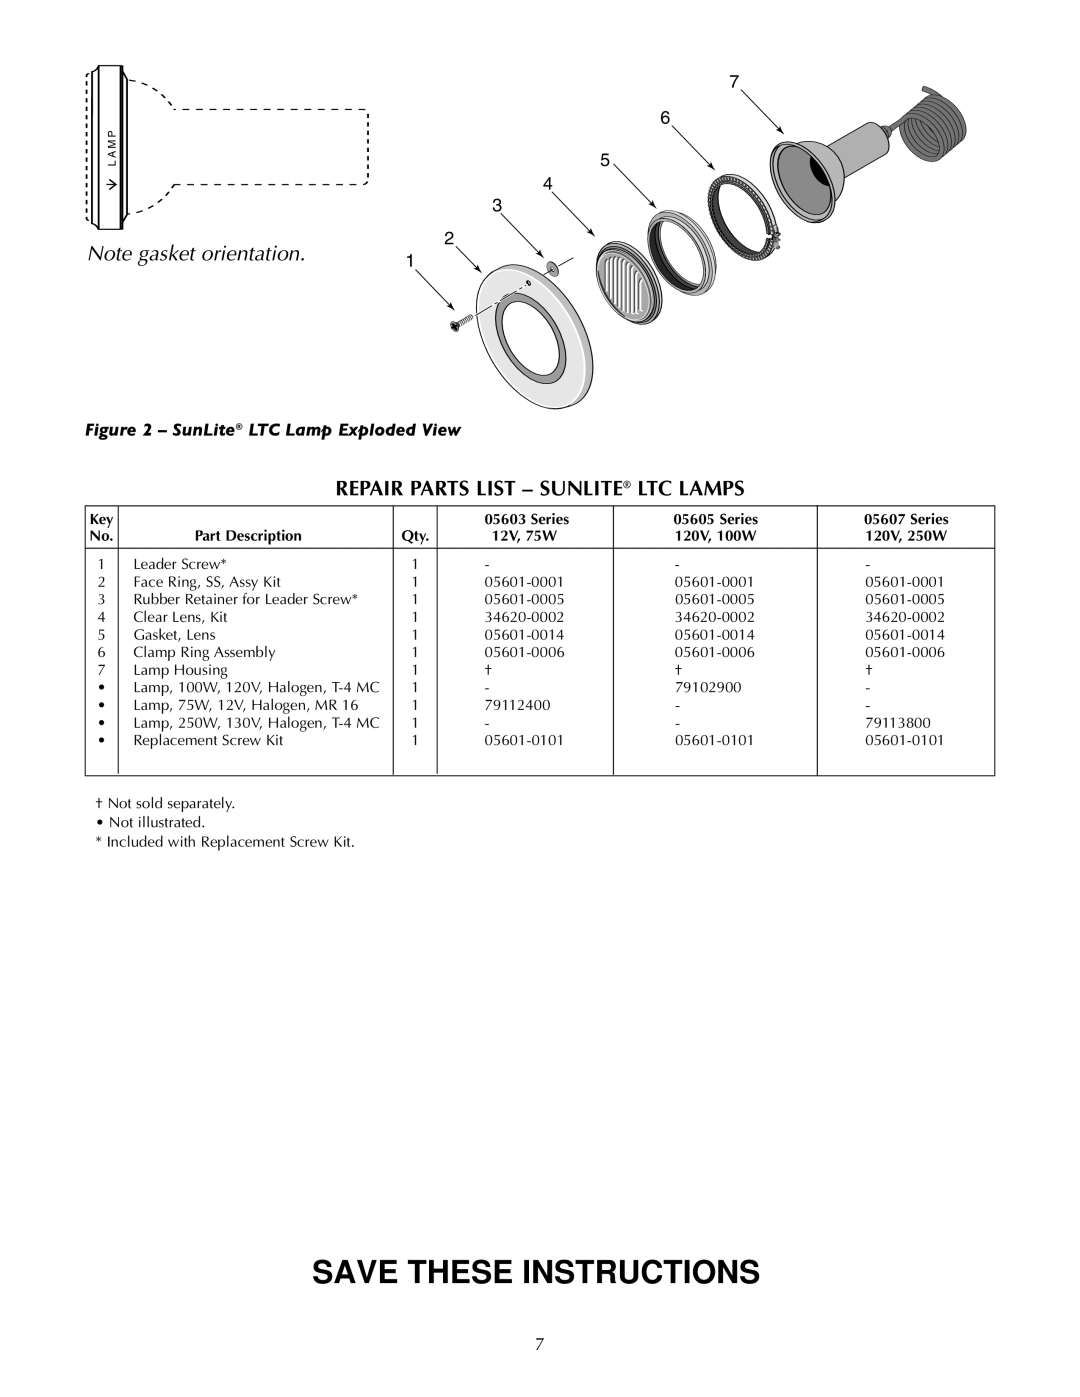 Pentair SunLite LTC Repair Parts List - Sunlite Ltc Lamps, Save These Instructions, Note gasket orientation, 7 6 5, Series 